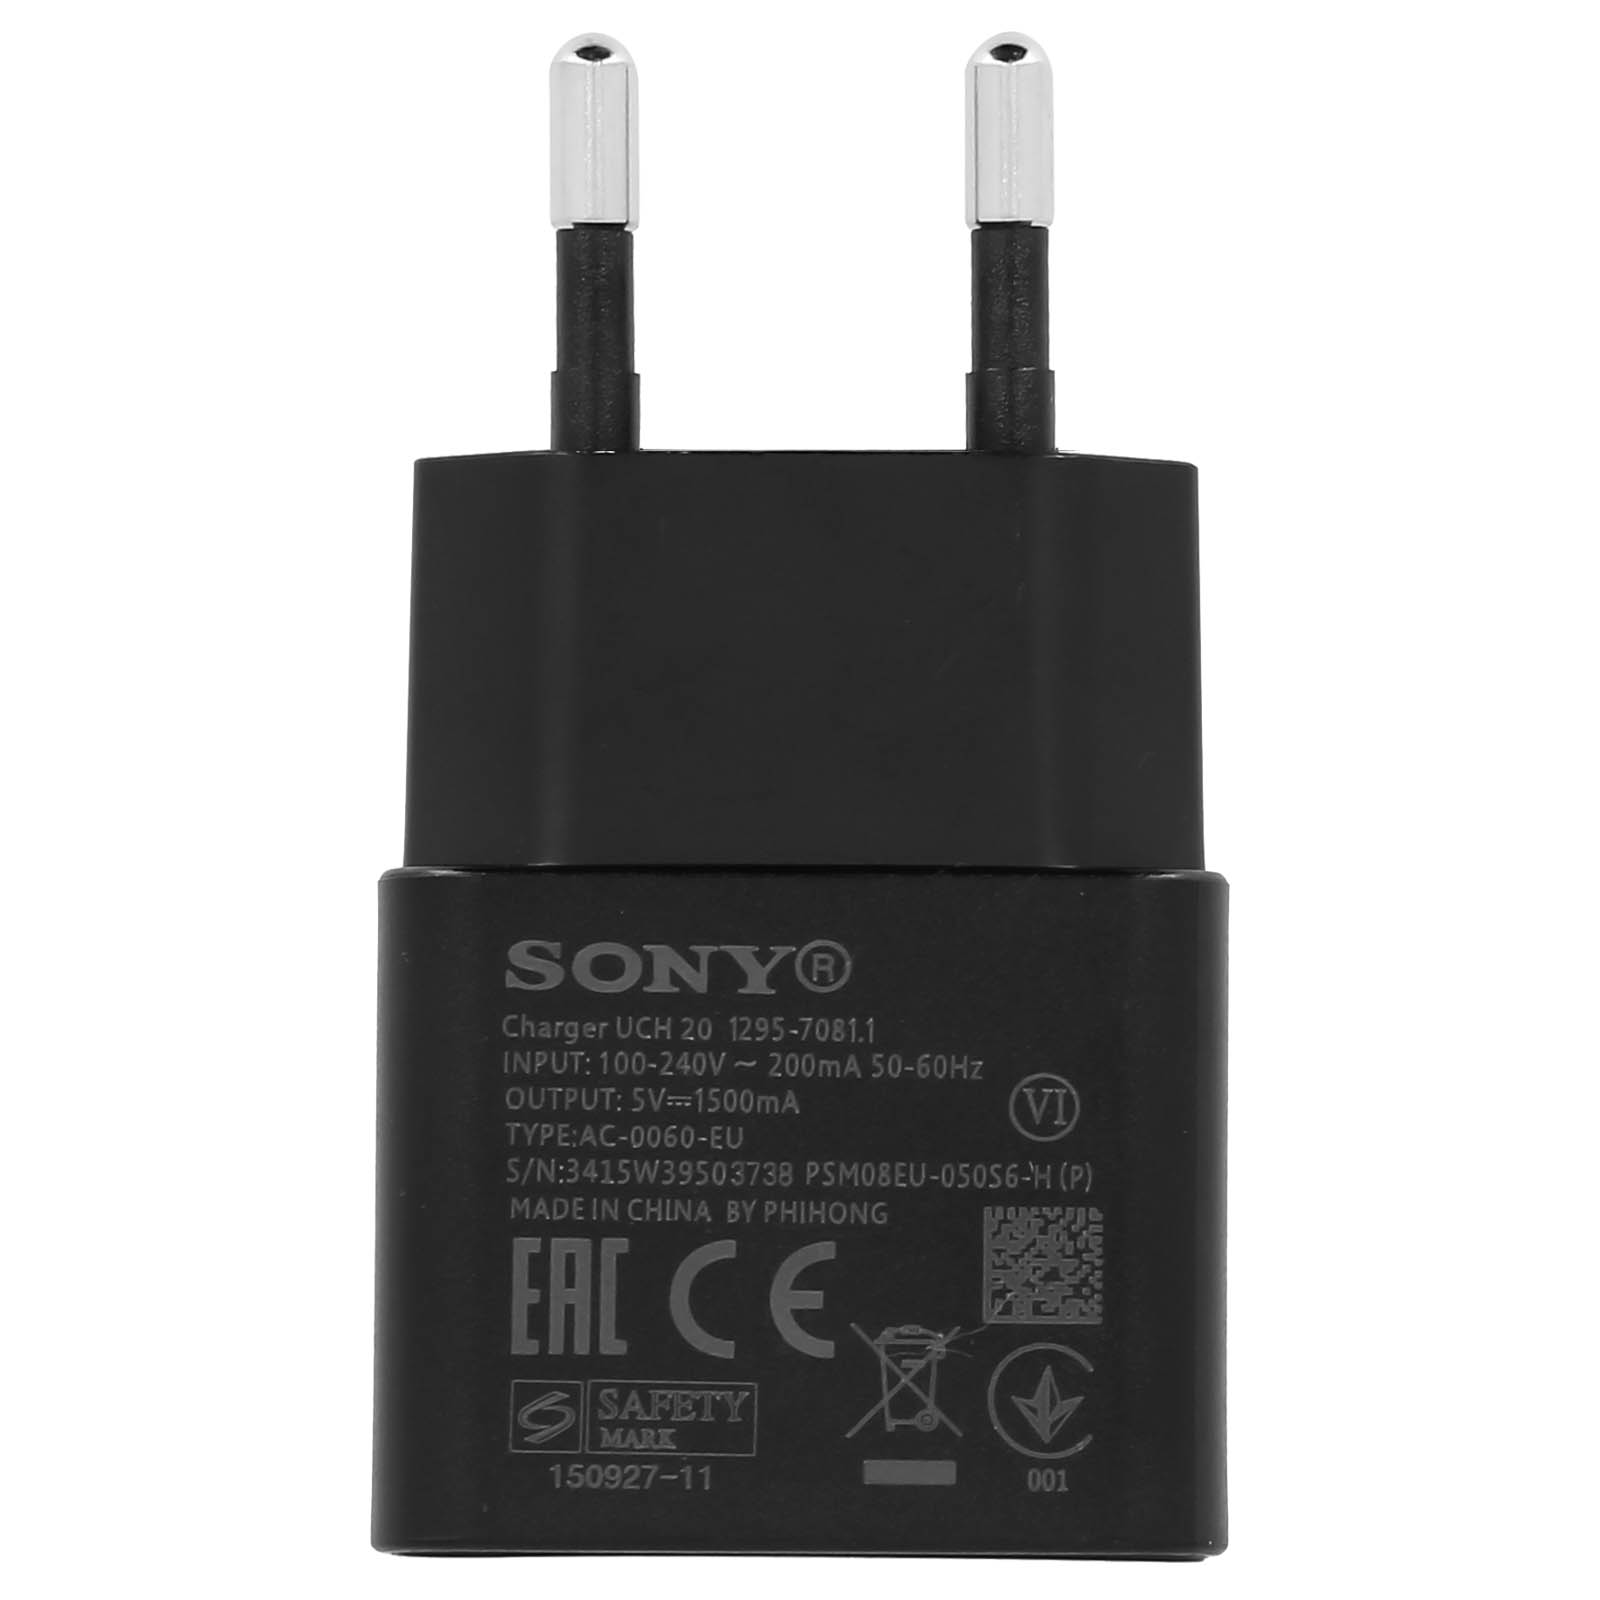 5 Schwarz SONY Universal, Volt, Netzteil, 1.5A USB-C Wand-Ladegerät Netzteile